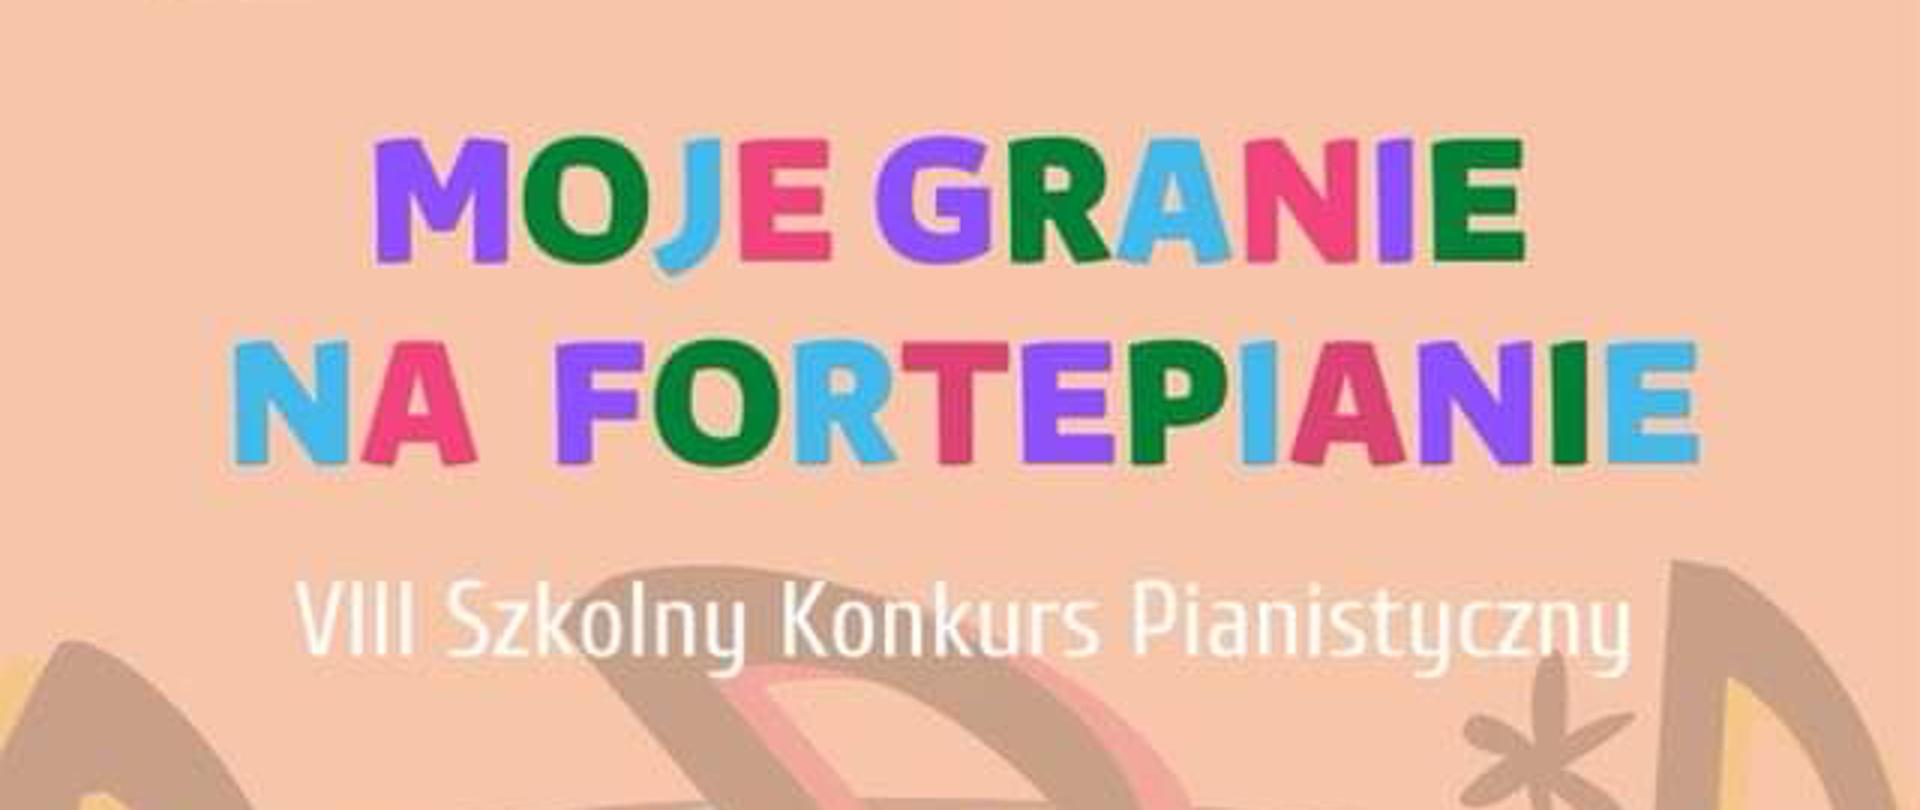 Na plakacie dziewczynka gra na fortepianie, napisy :Szkolny Konkurs Pianistyczny Moje granie na fortepianie, środa 11 maja 2022 godzina 13.00